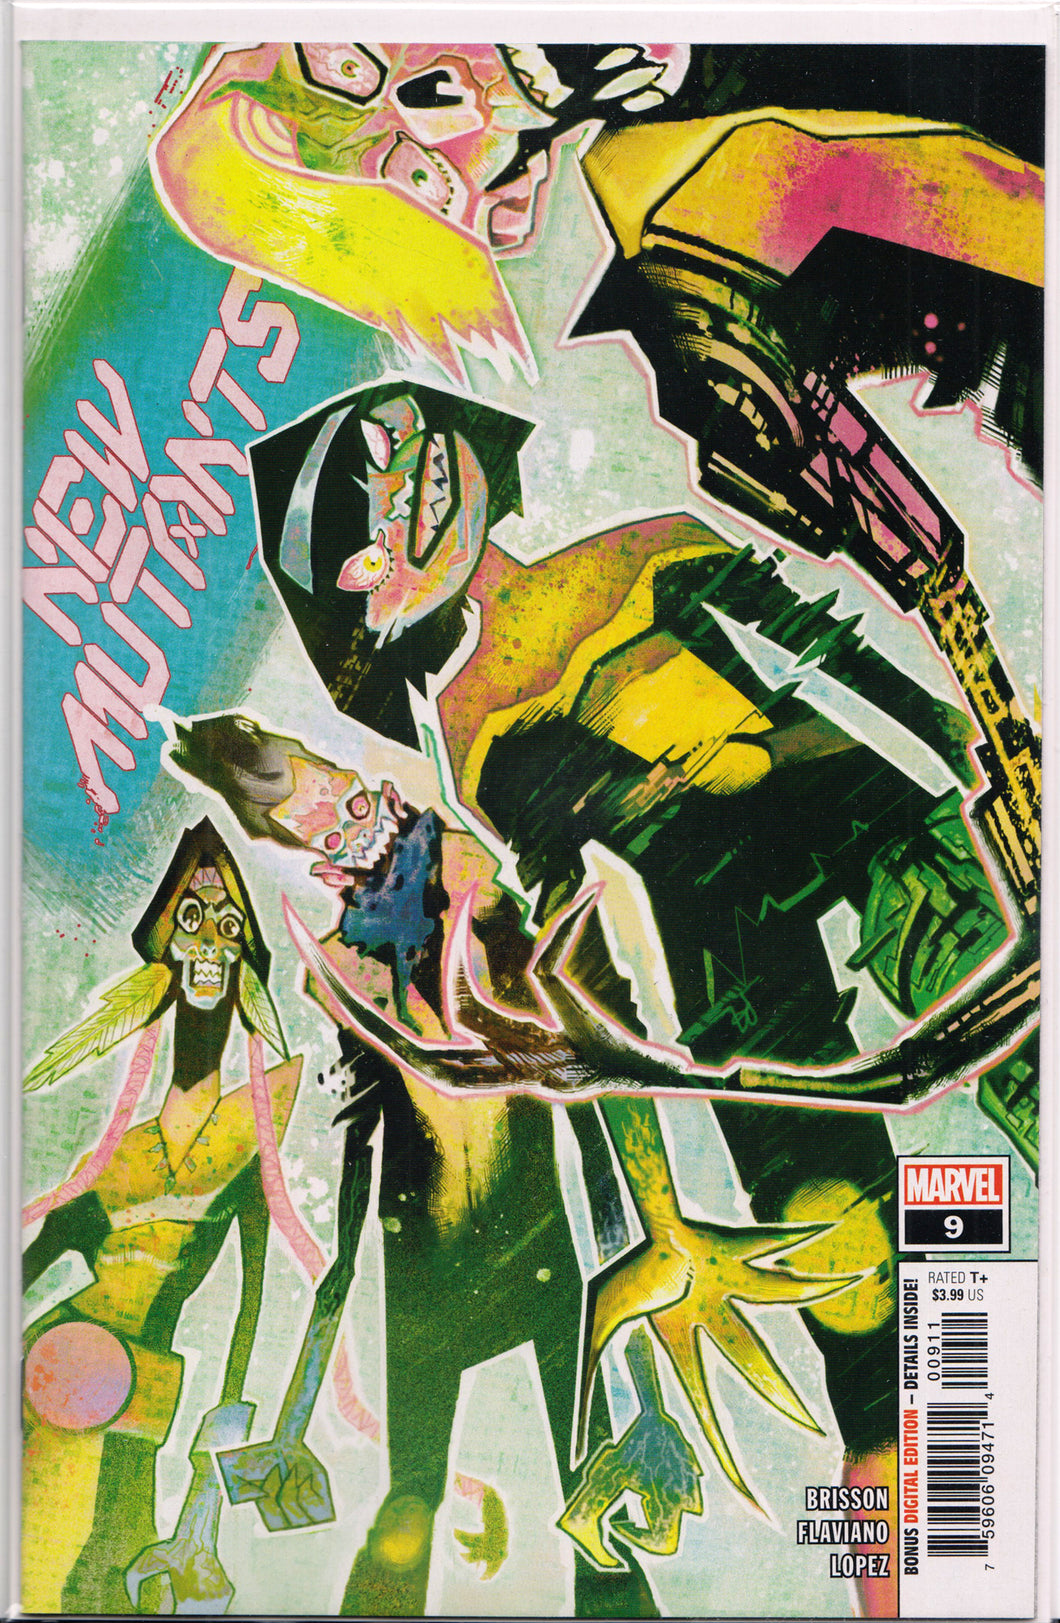 NEW MUTANTS #9 (1ST PRINT) COMIC BOOK ~ Marvel Comics